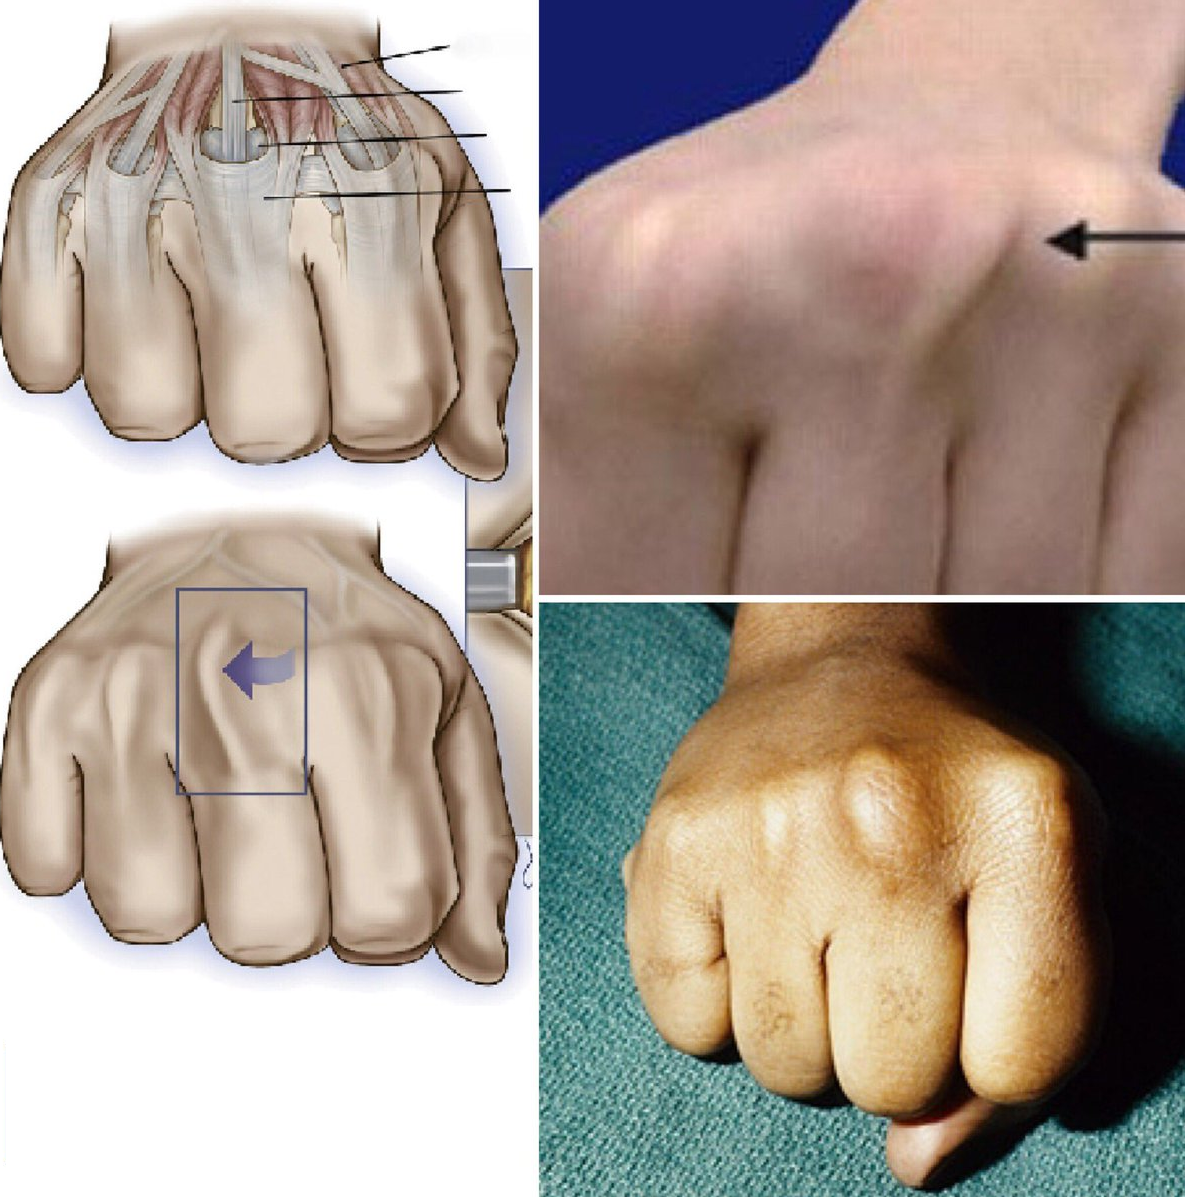 Khớp tay bị ảnh hưởng do thường xuyên sử dụng găng tay chật.